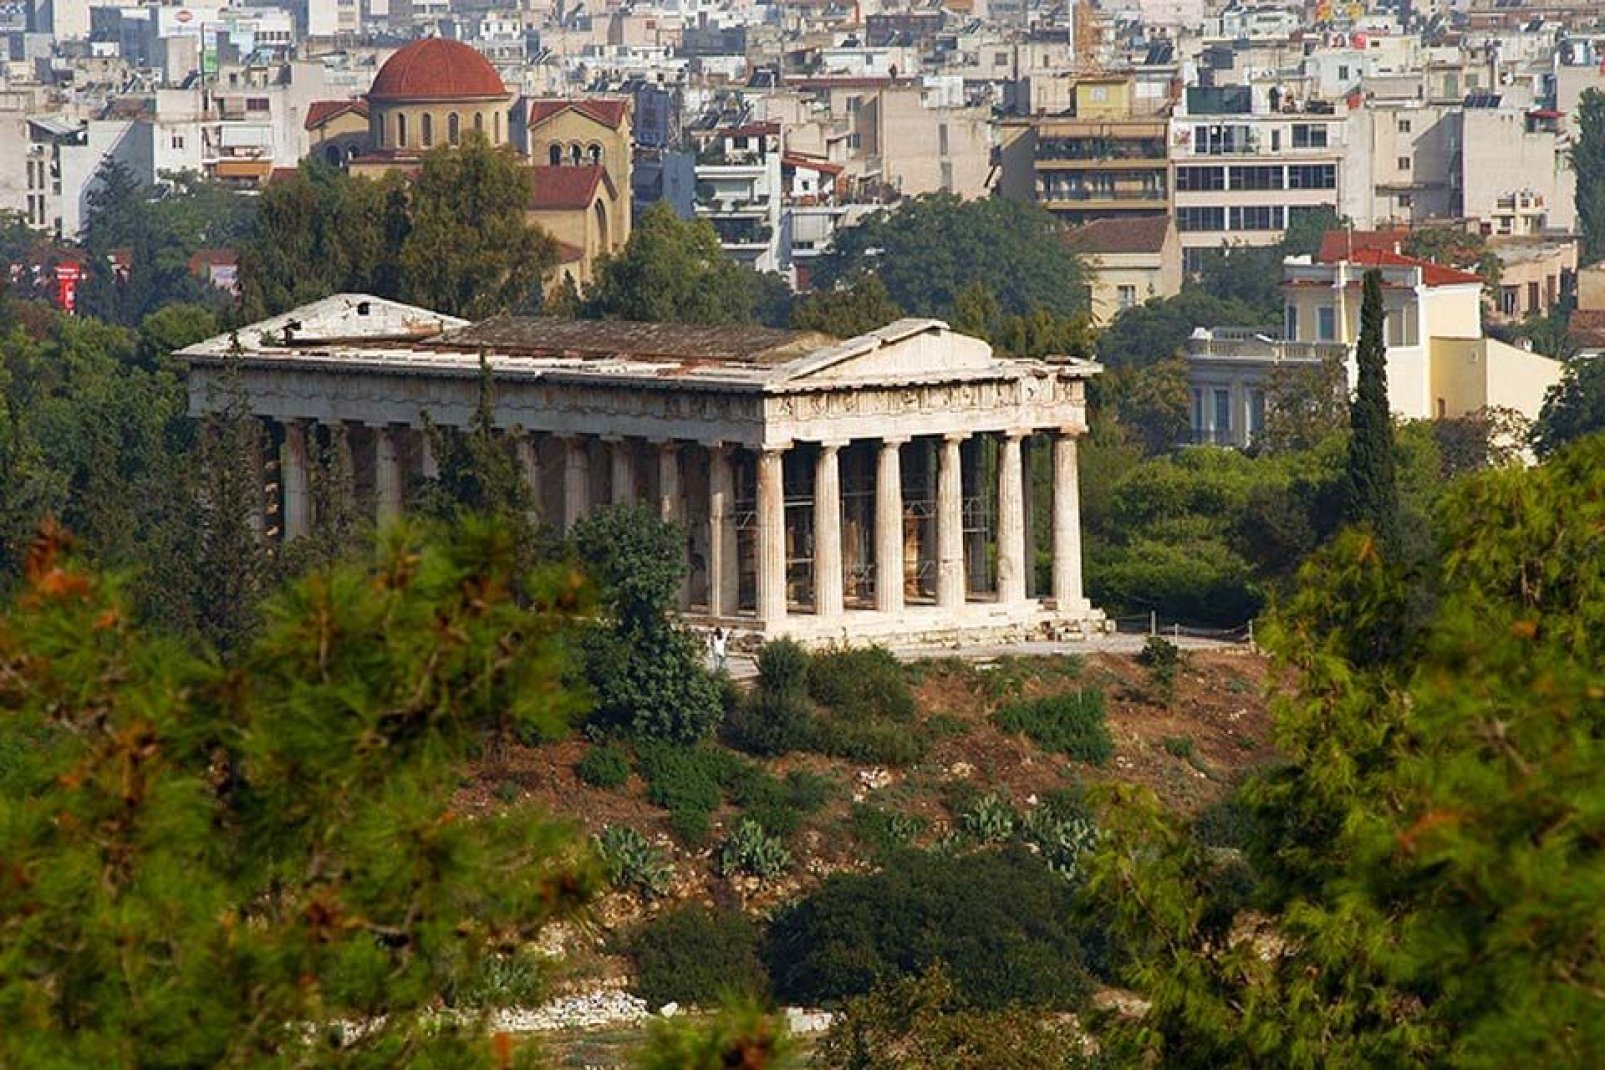 In der Antike war dies eine heilige Kultstätte zur Verehrung der Götter, unter anderem der Göttin Athene.